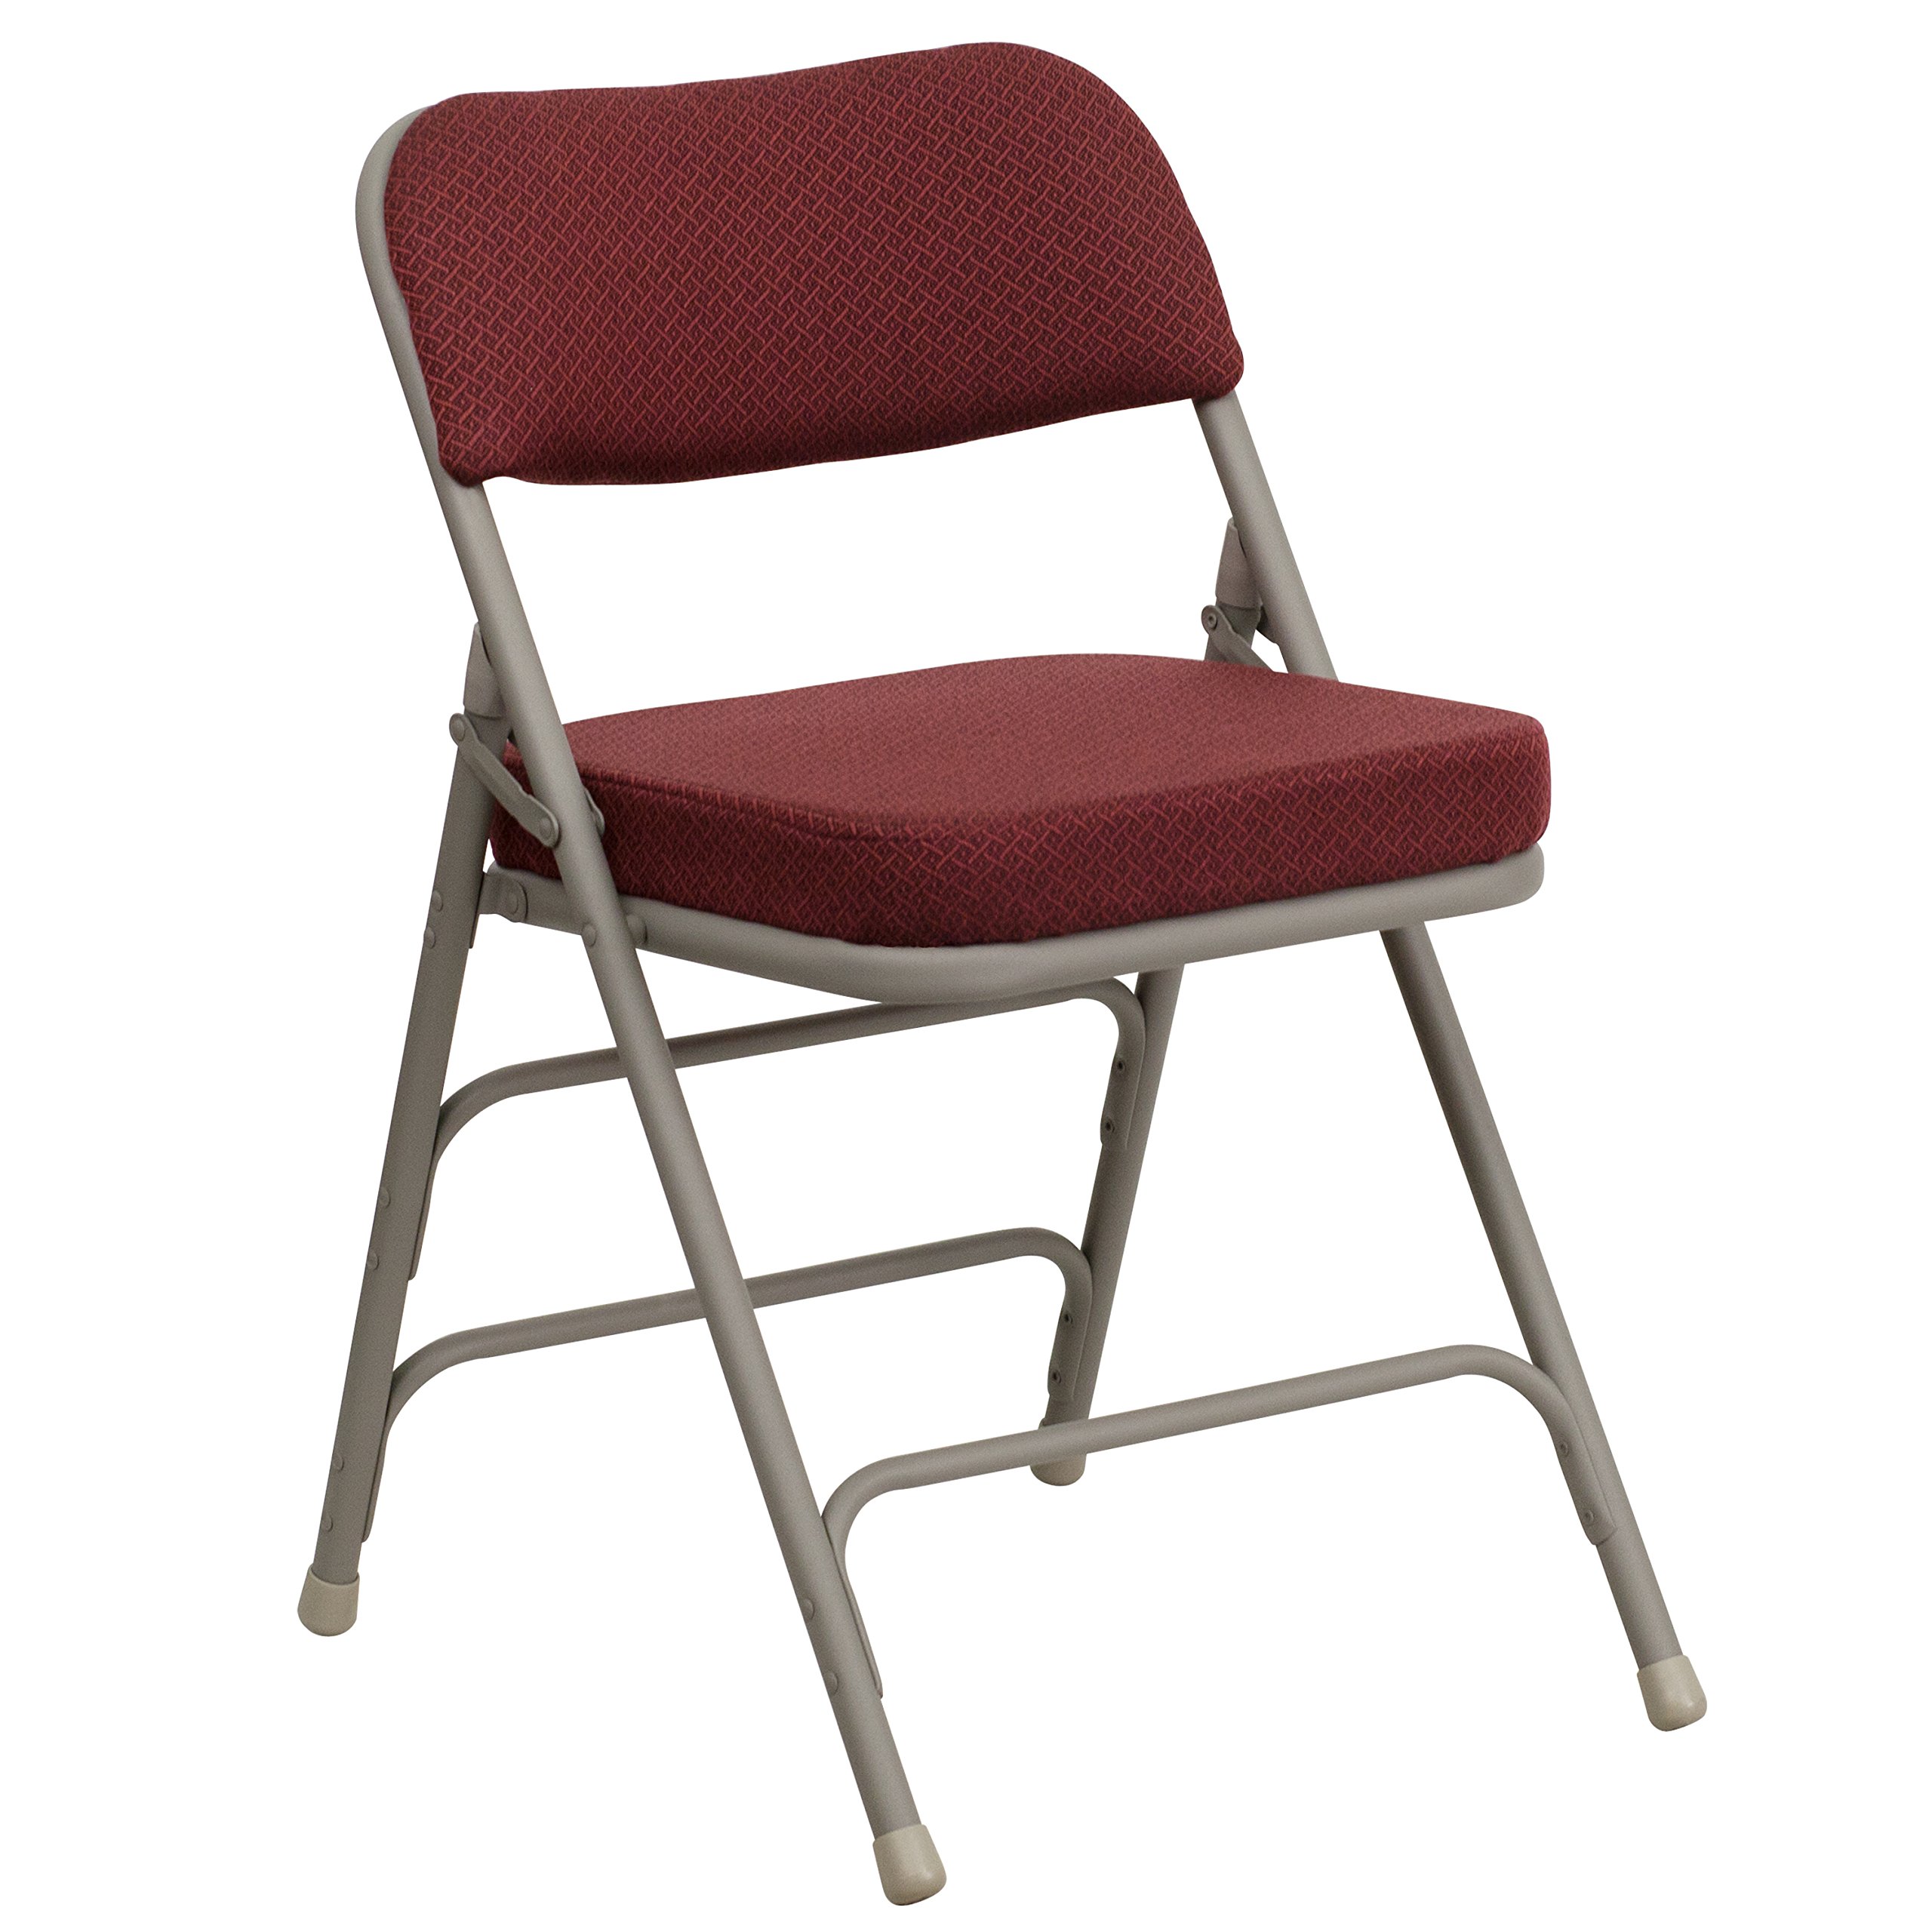  Flash Furniture Изогнутый металлический складной стул премиум-класса серии Hercules с тройными распорками и двойными...